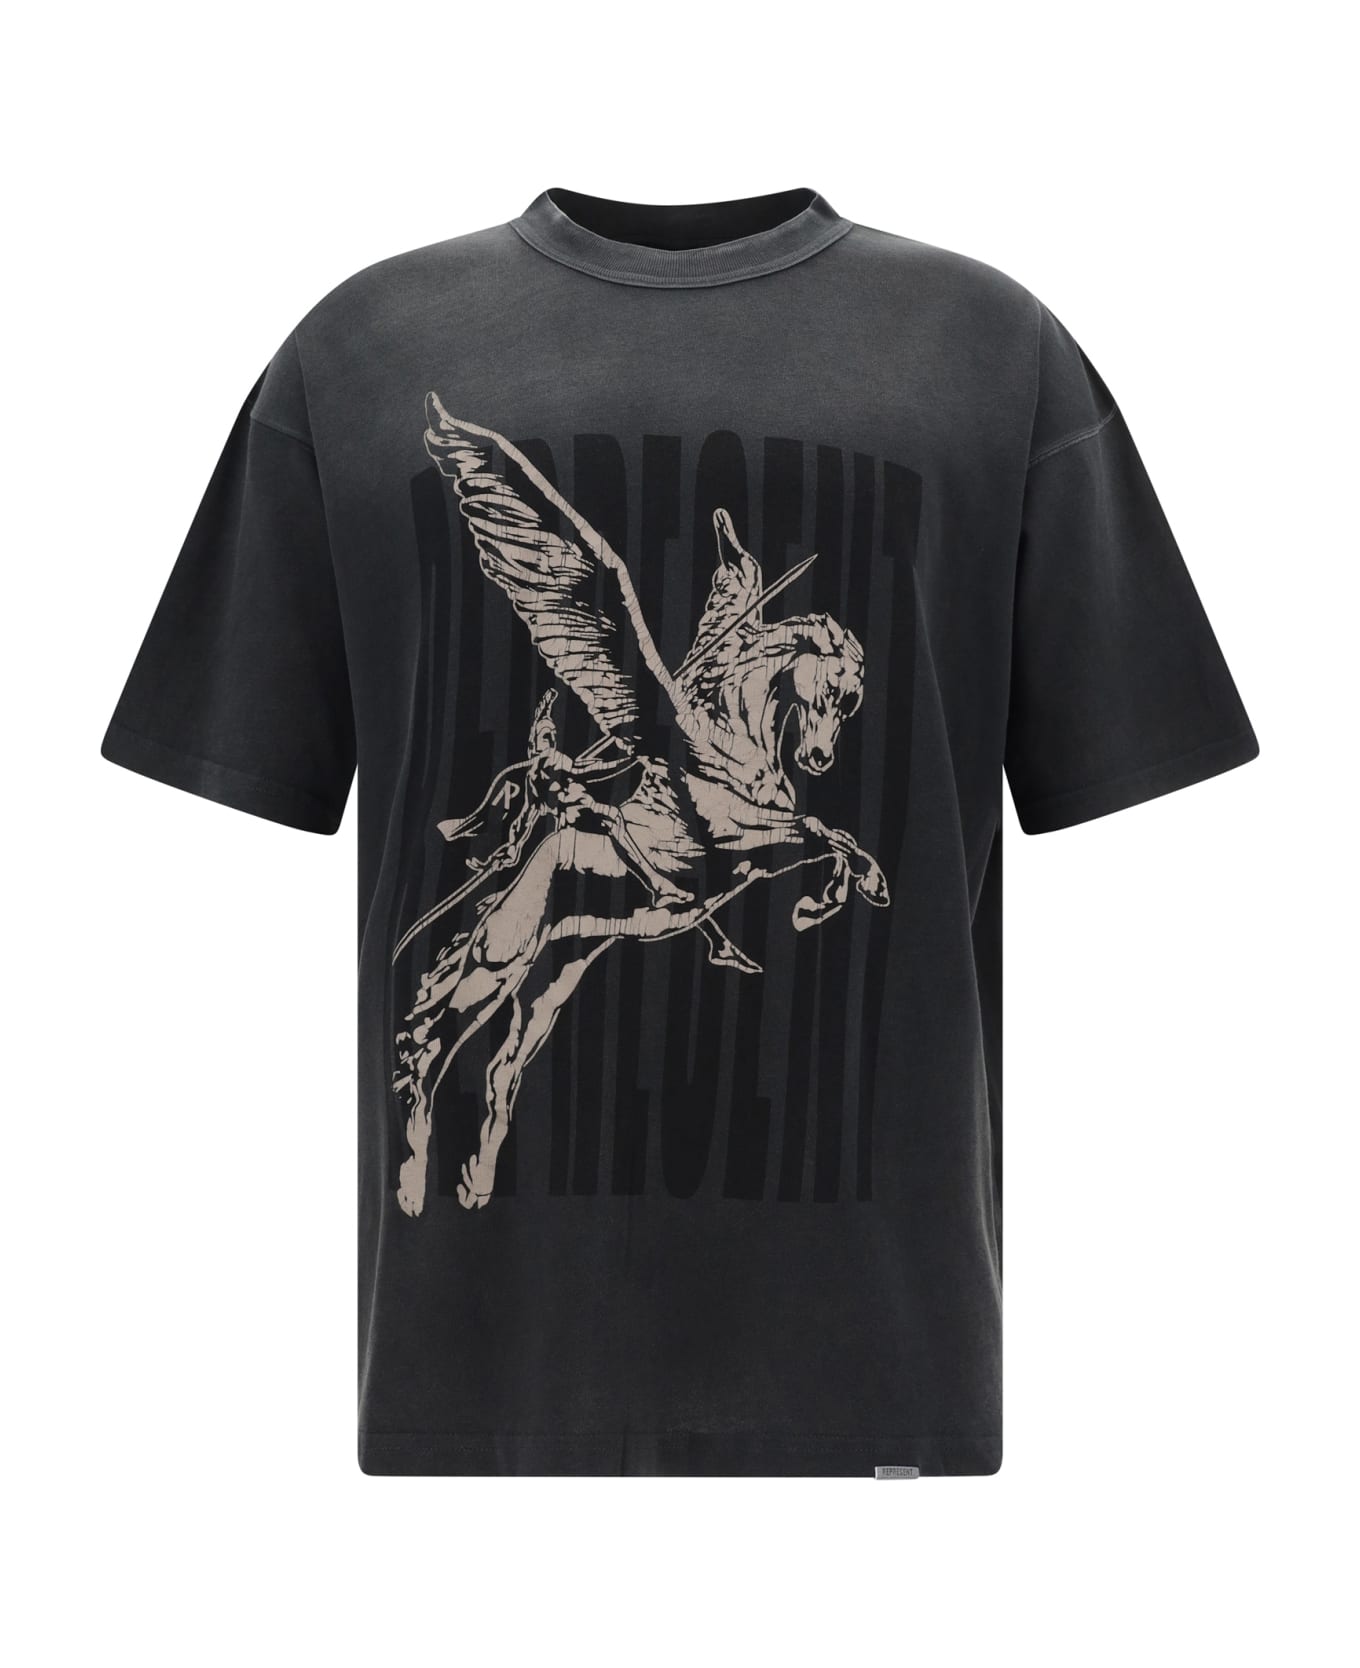 REPRESENT Spirits Mascot T-shirt - Aged Black シャツ